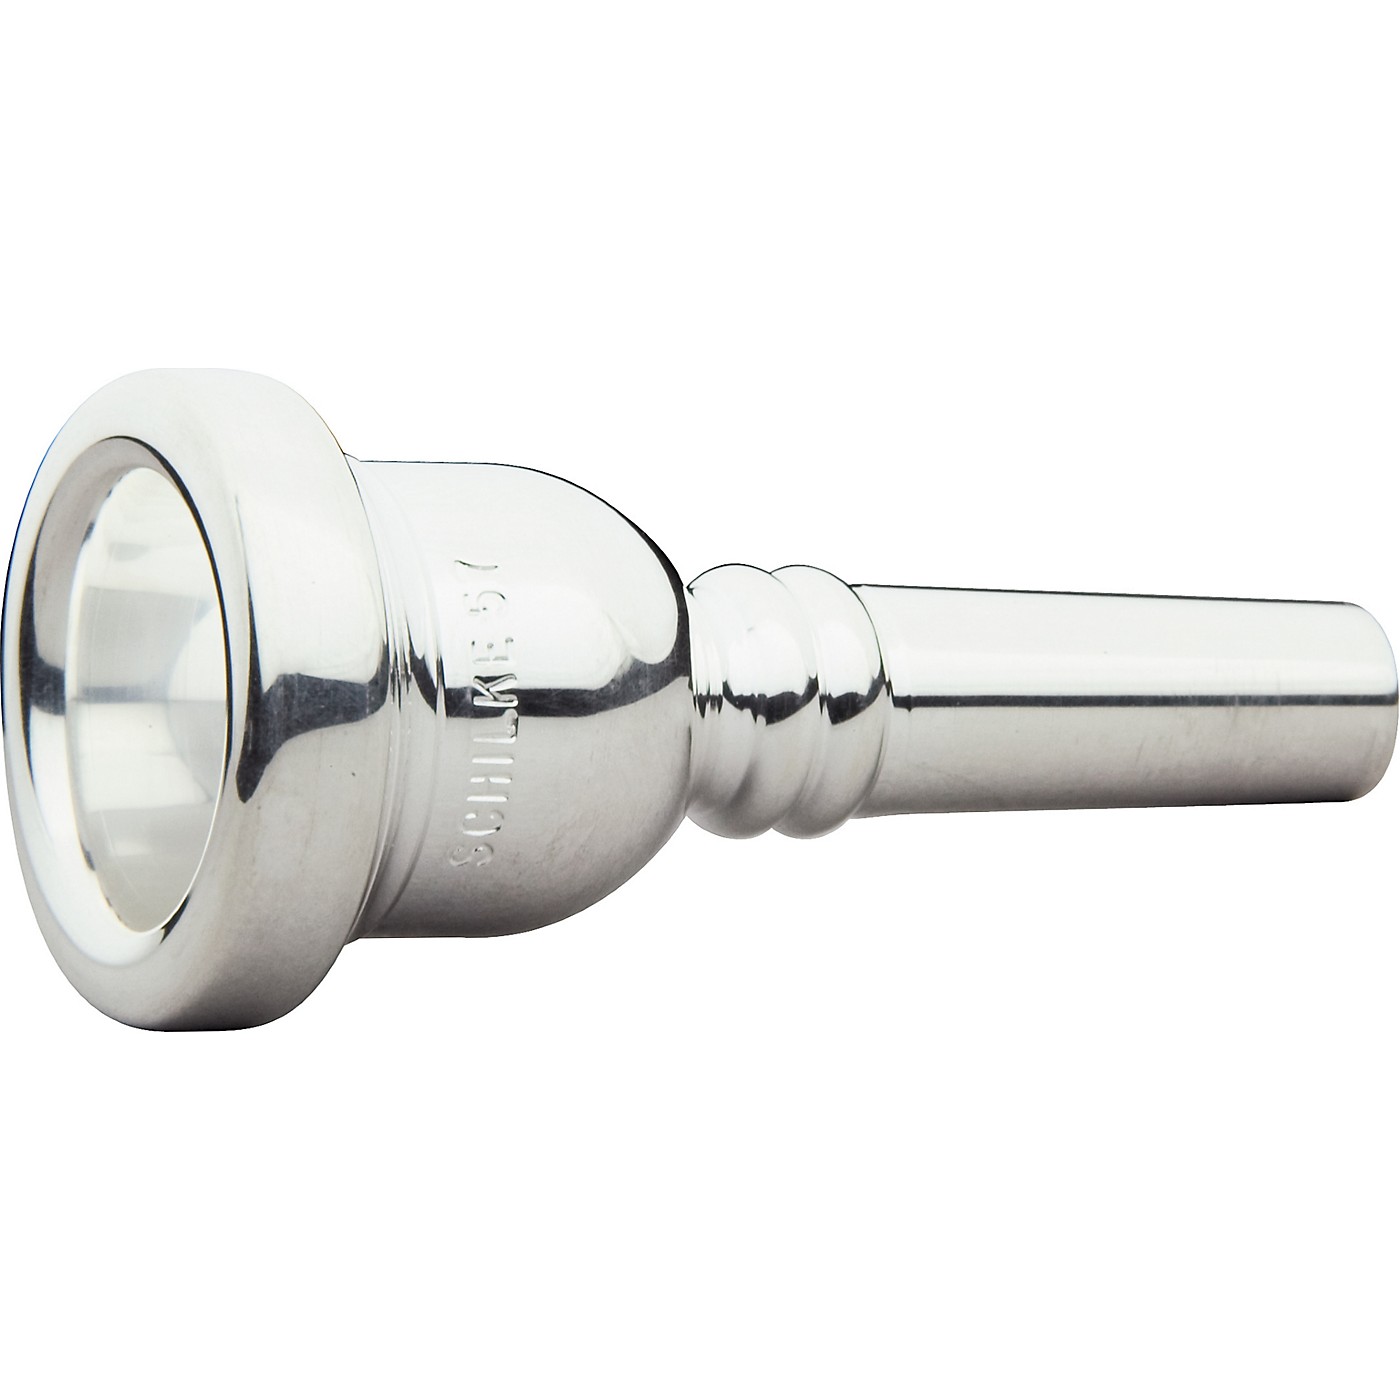 Schilke Standard Large Shank Trombone Mouthpiece in Silver 57 Silver